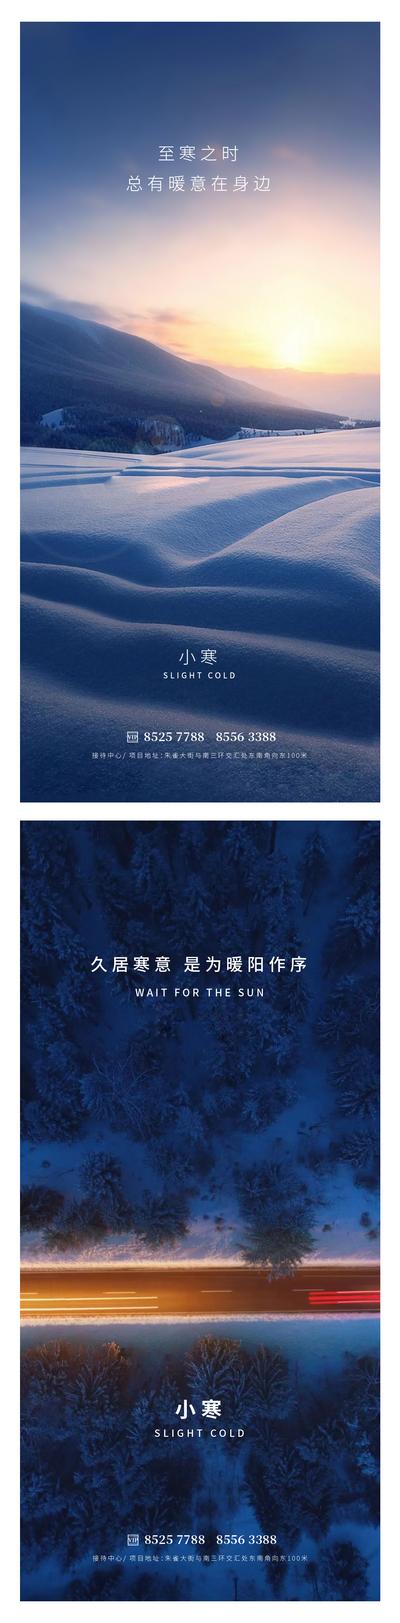 南门网 广告 海报 地产 小寒 节气太阳 雪山 雪地 树林 公路 灯光 早晨